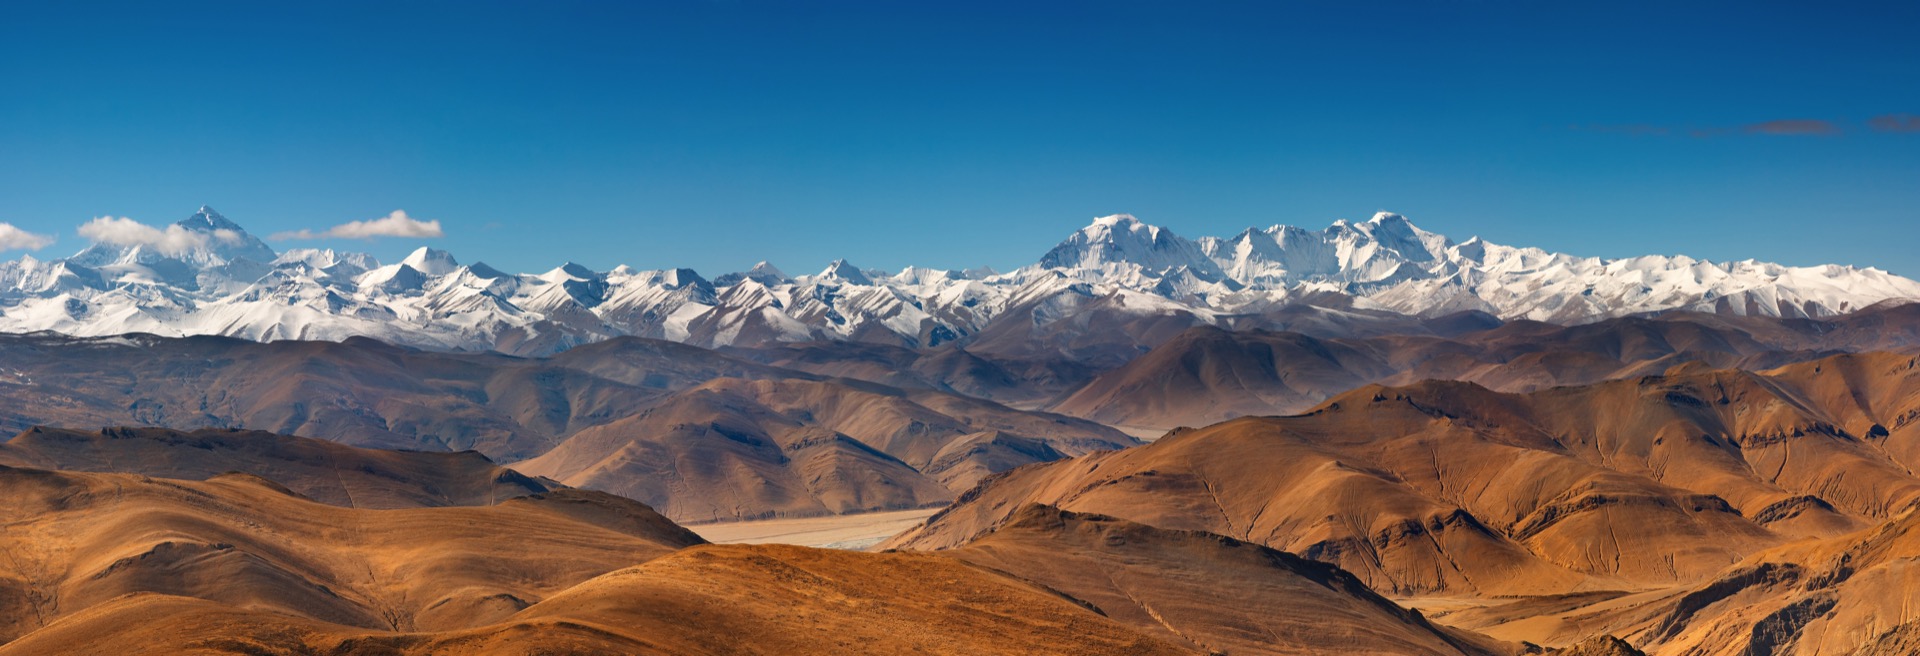 Pour comprendre la haute altitude du plateau tibétain, il faut plonger au cœur du manteau terrestre. © Dmitry Pichugin, Adobe Stock